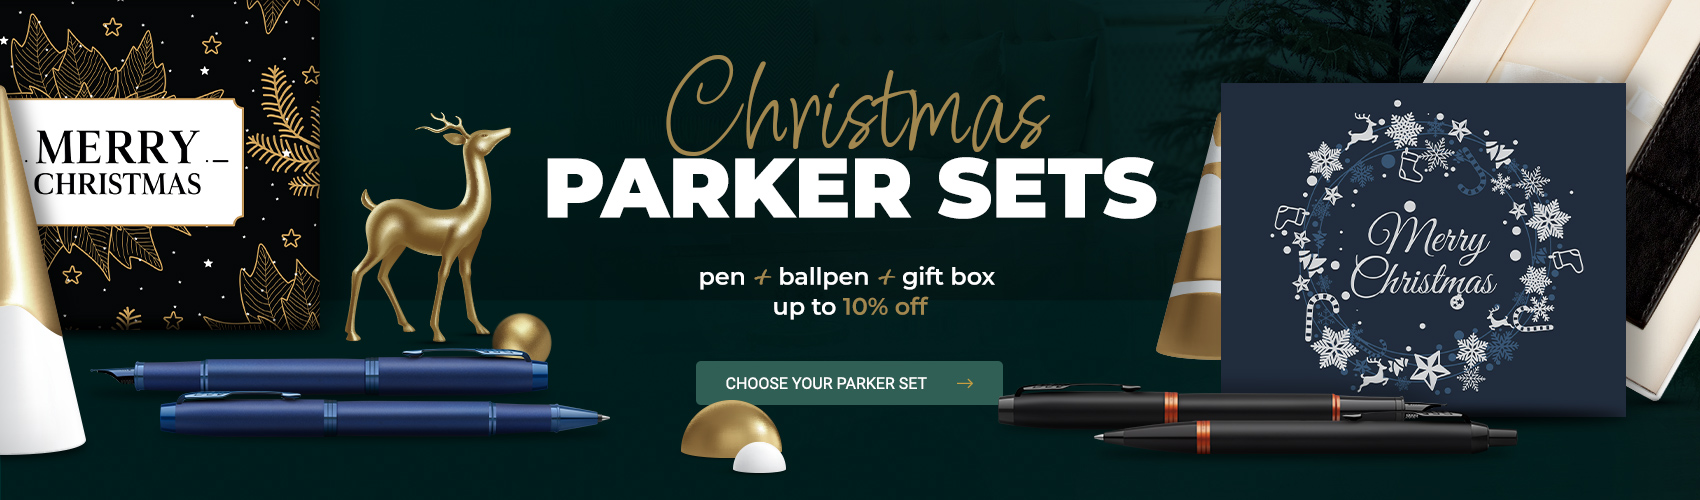 Christmas Parker sets 10% off